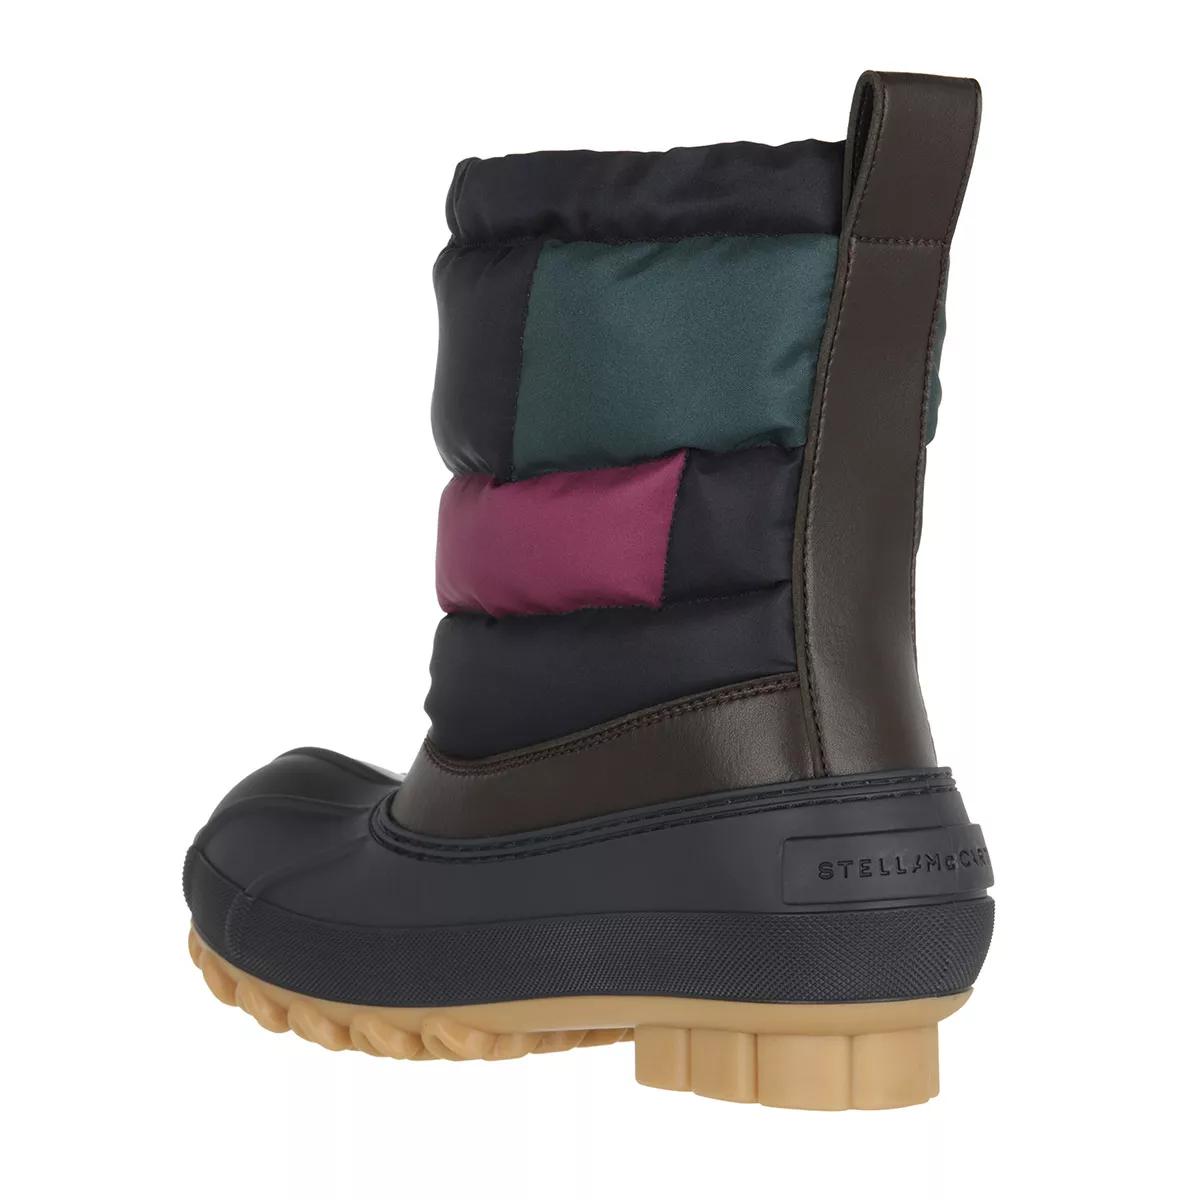 Stella McCartney Boots & Stiefeletten - Boots - Gr. 41 (EU) - in Bunt - für Damen von Stella Mccartney